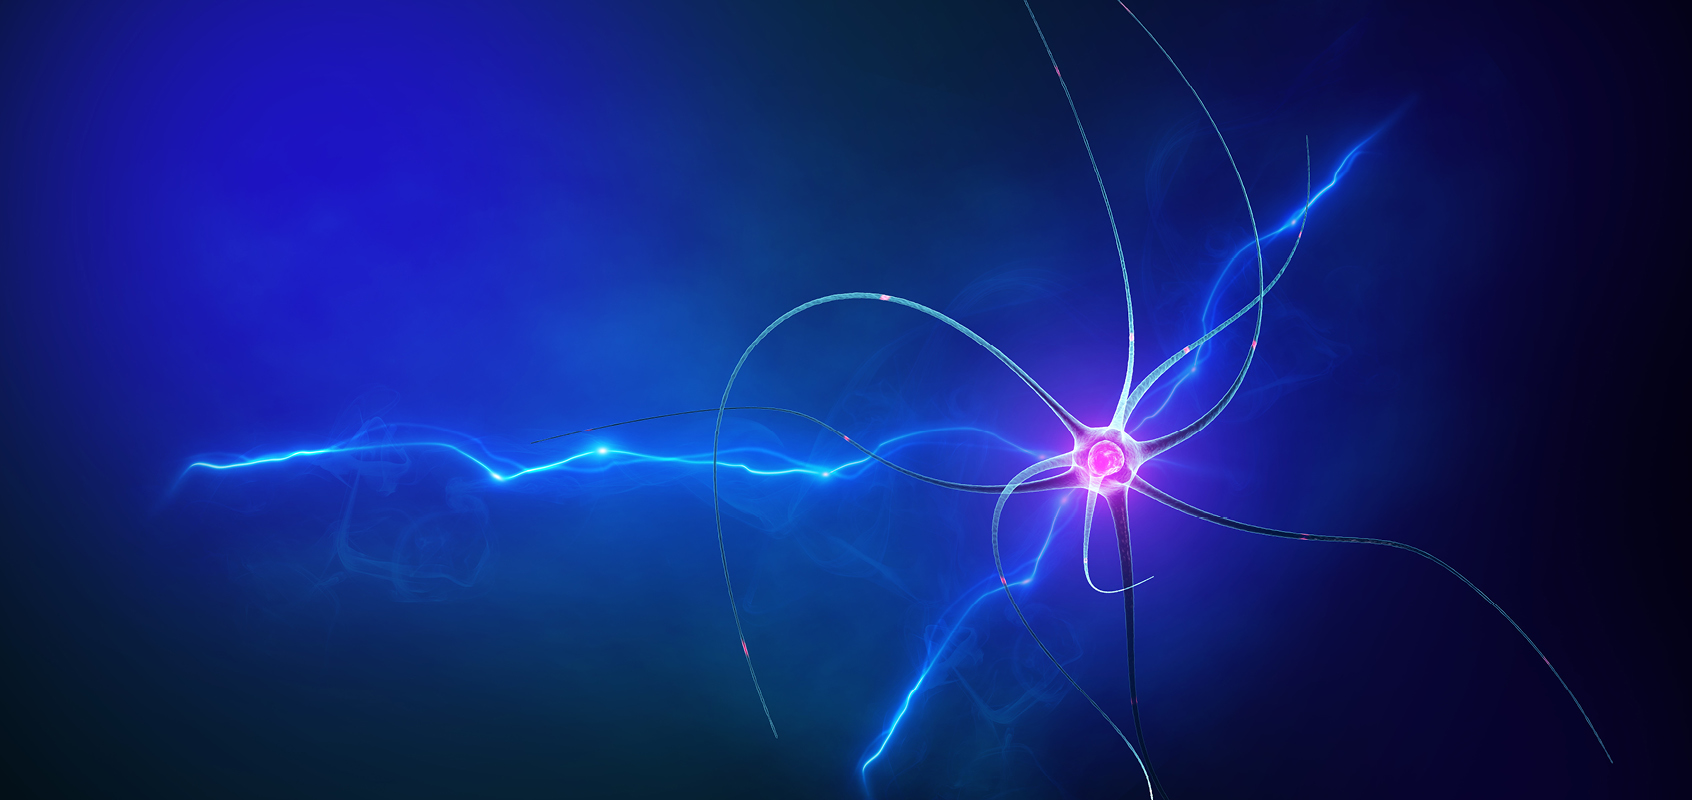 Isolated image of neuron on blue background